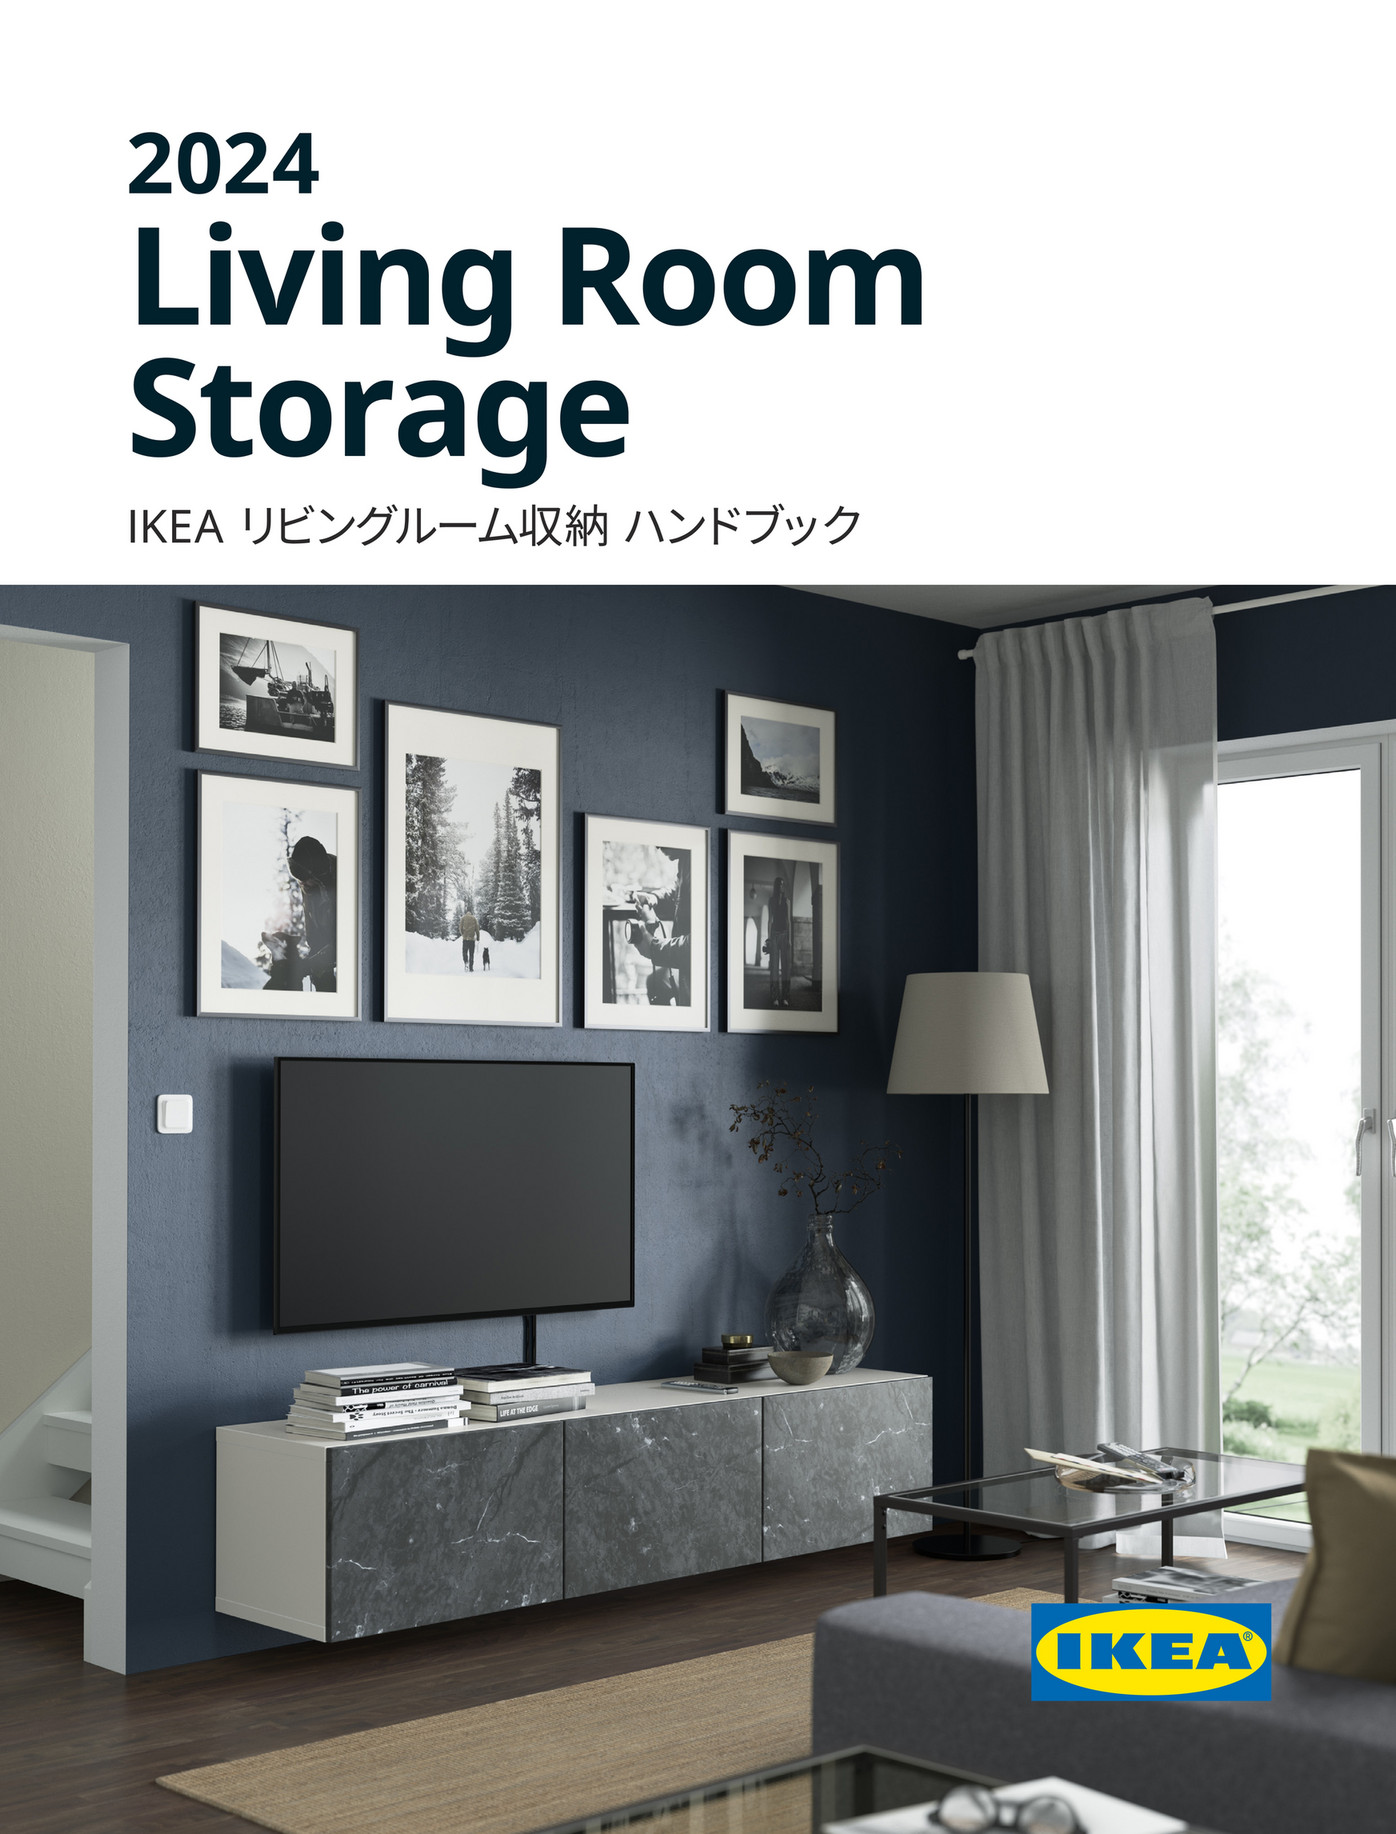 IKEA Japan (Japanese) - IKEA リビングルーム収納 ハンドブック 2024 